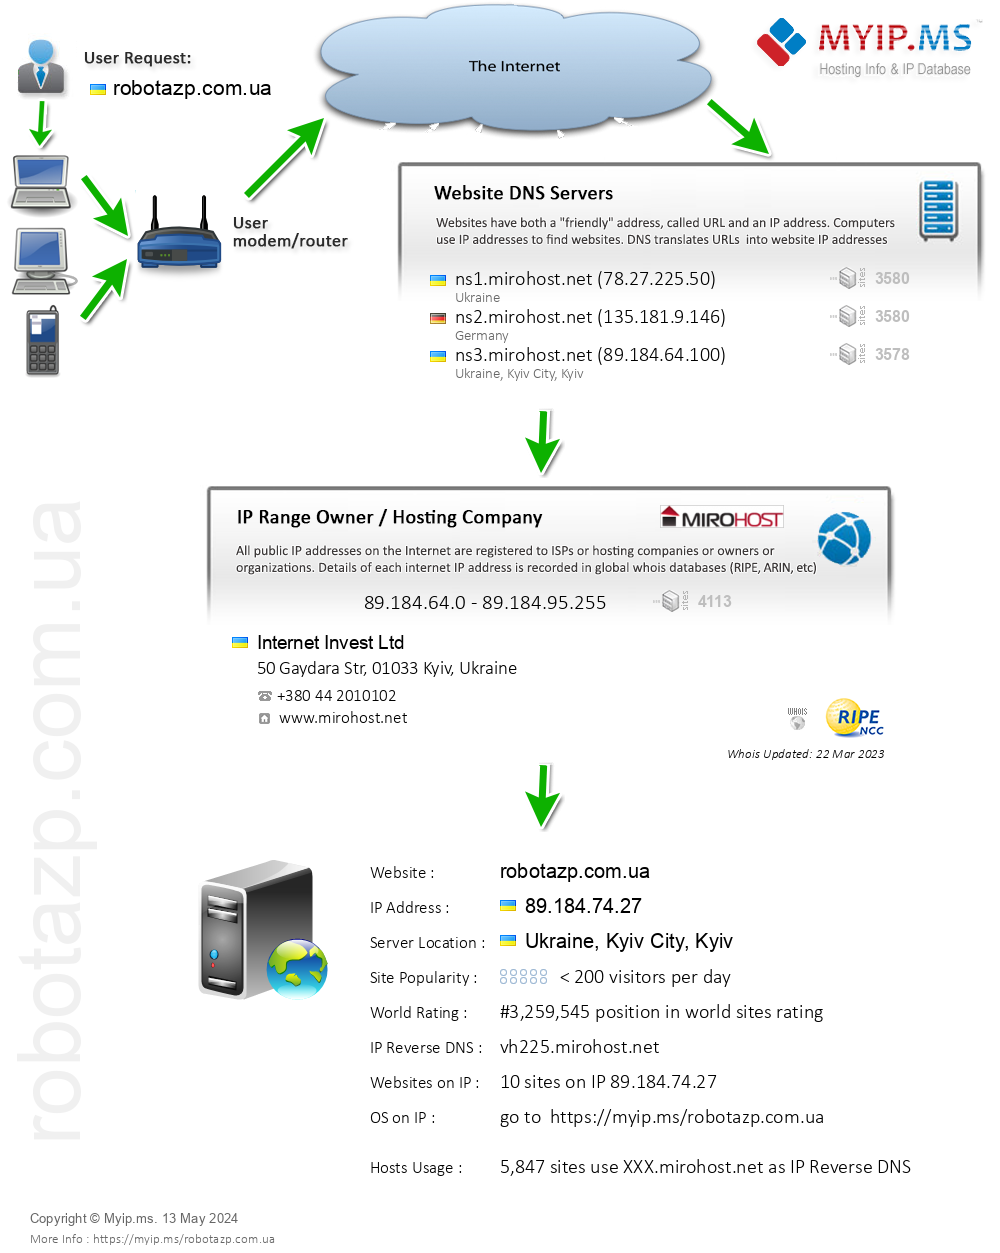 Robotazp.com.ua - Website Hosting Visual IP Diagram